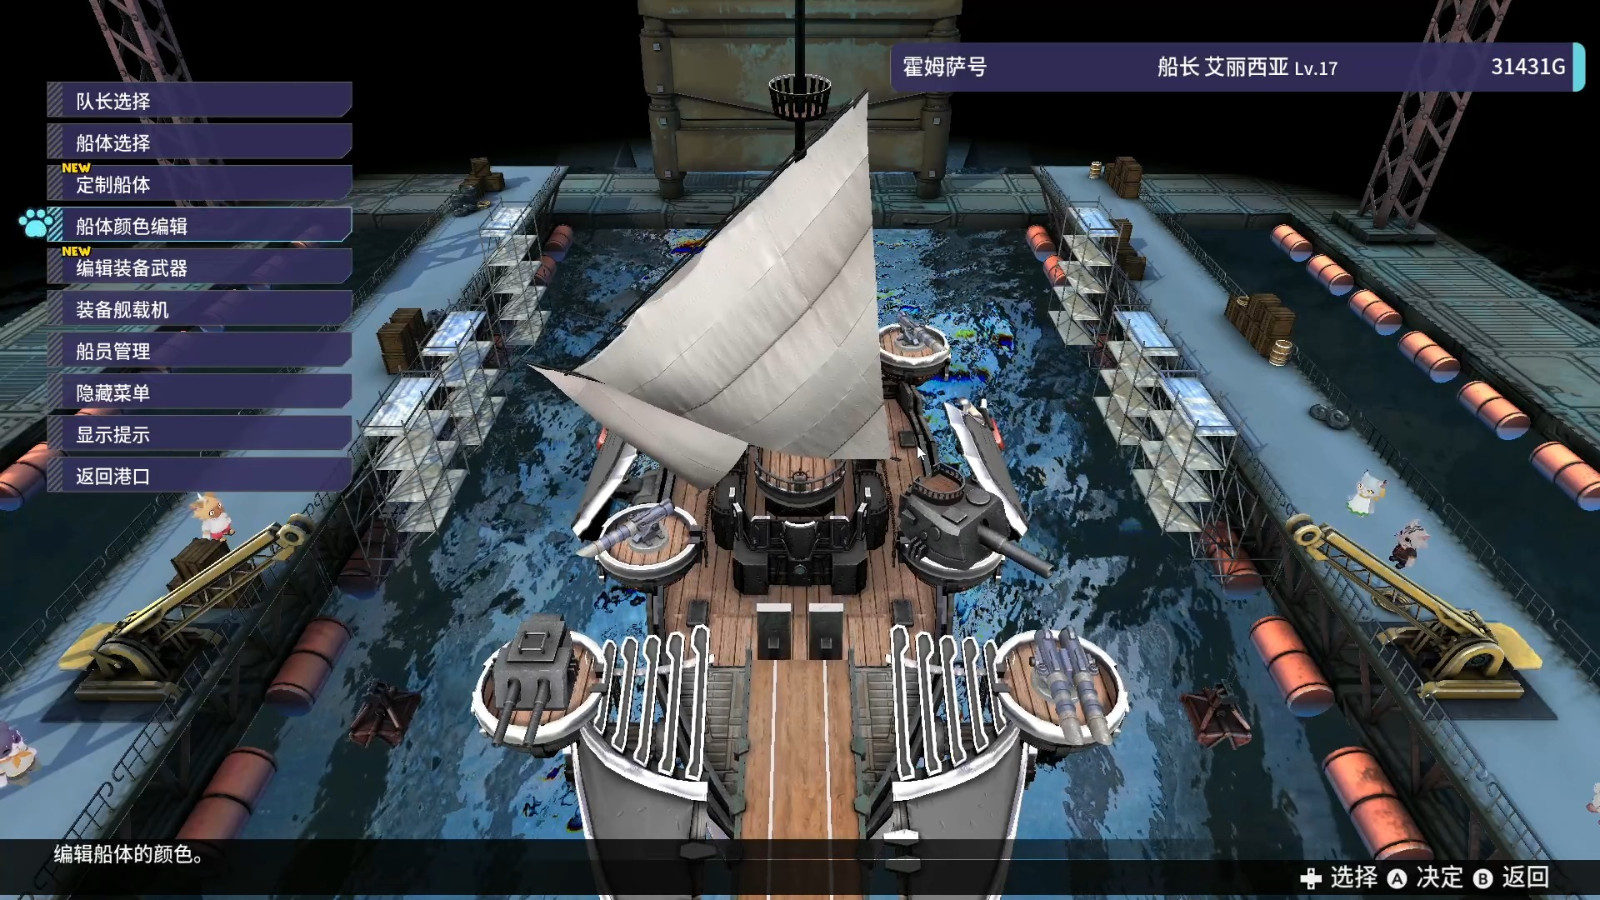 Gamera将发行美少女航海RPG《海天猫猫船 BUCCANYAR》 中文更新后价格将永降